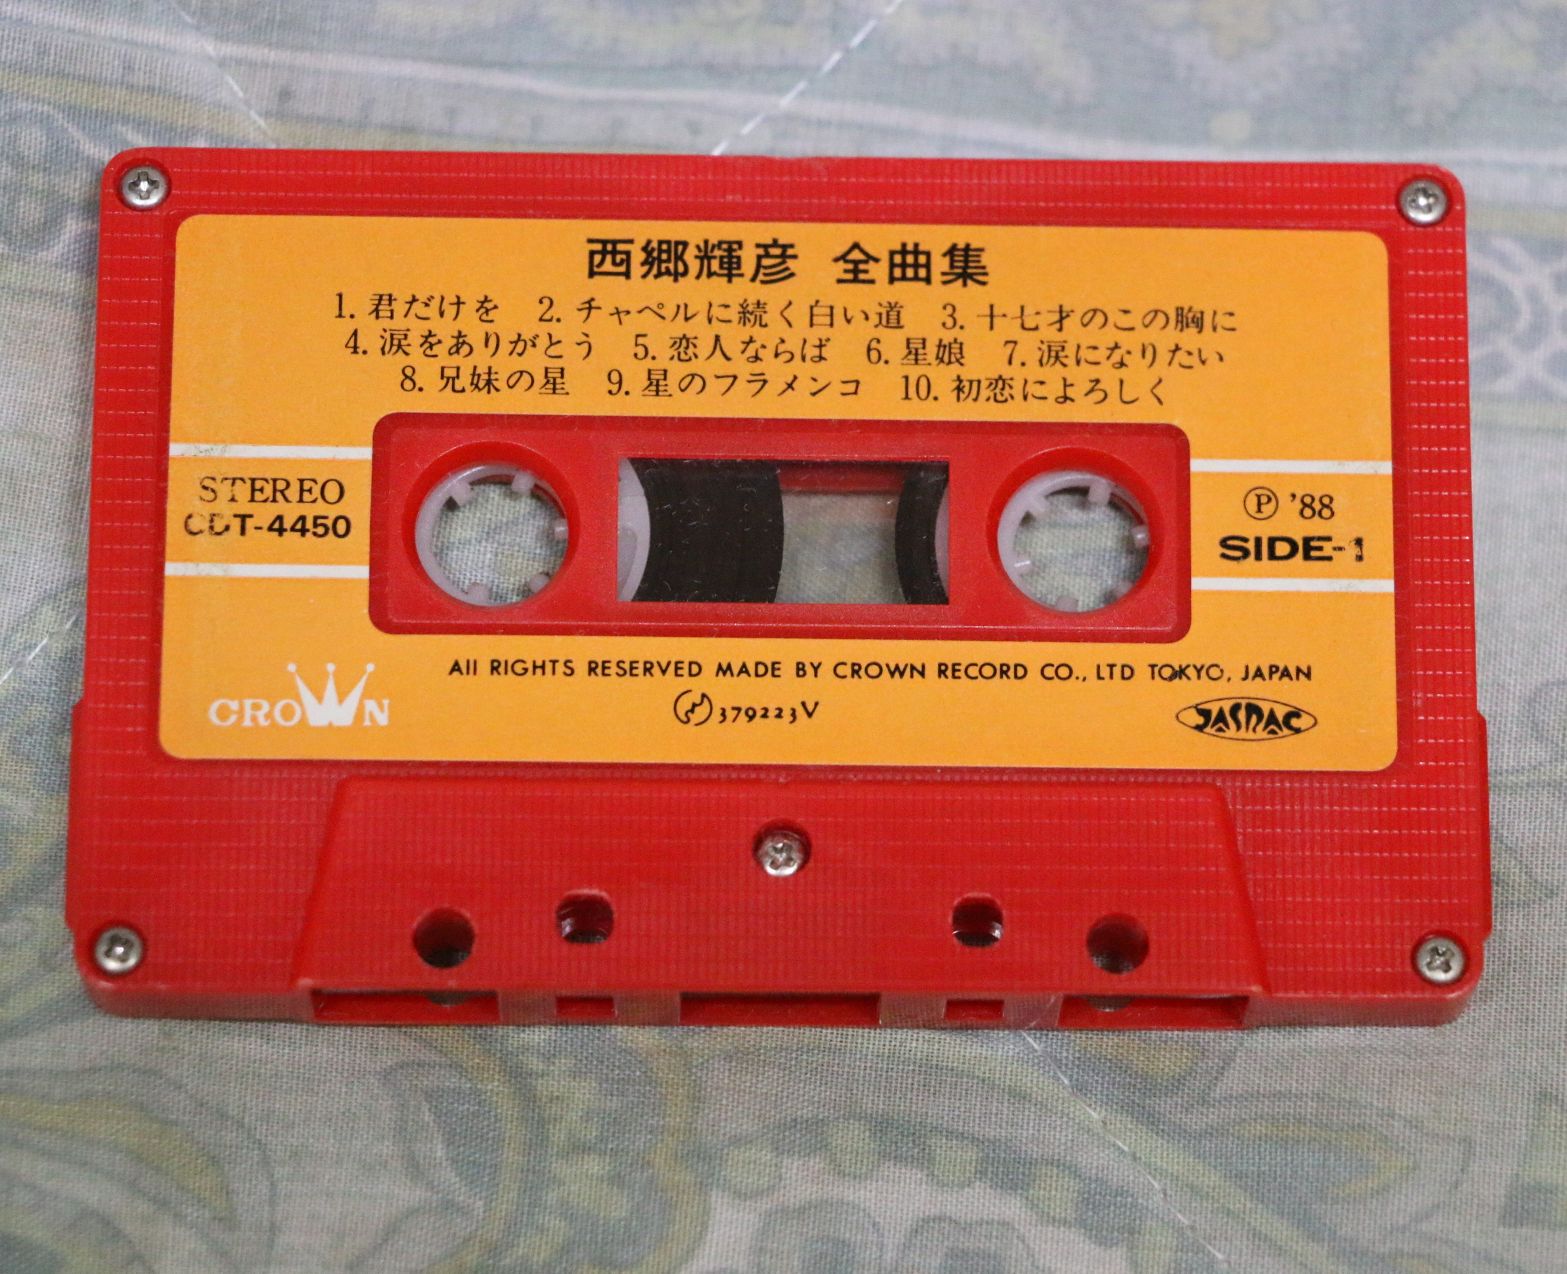 桜の金工 V Twitter 自分が人生初めて購入した 西郷輝彦 全曲集 が出てきた 江戸を斬る からはじまり 西郷マニアへの道への一歩を踏み出すきっかけになったカセットテープです